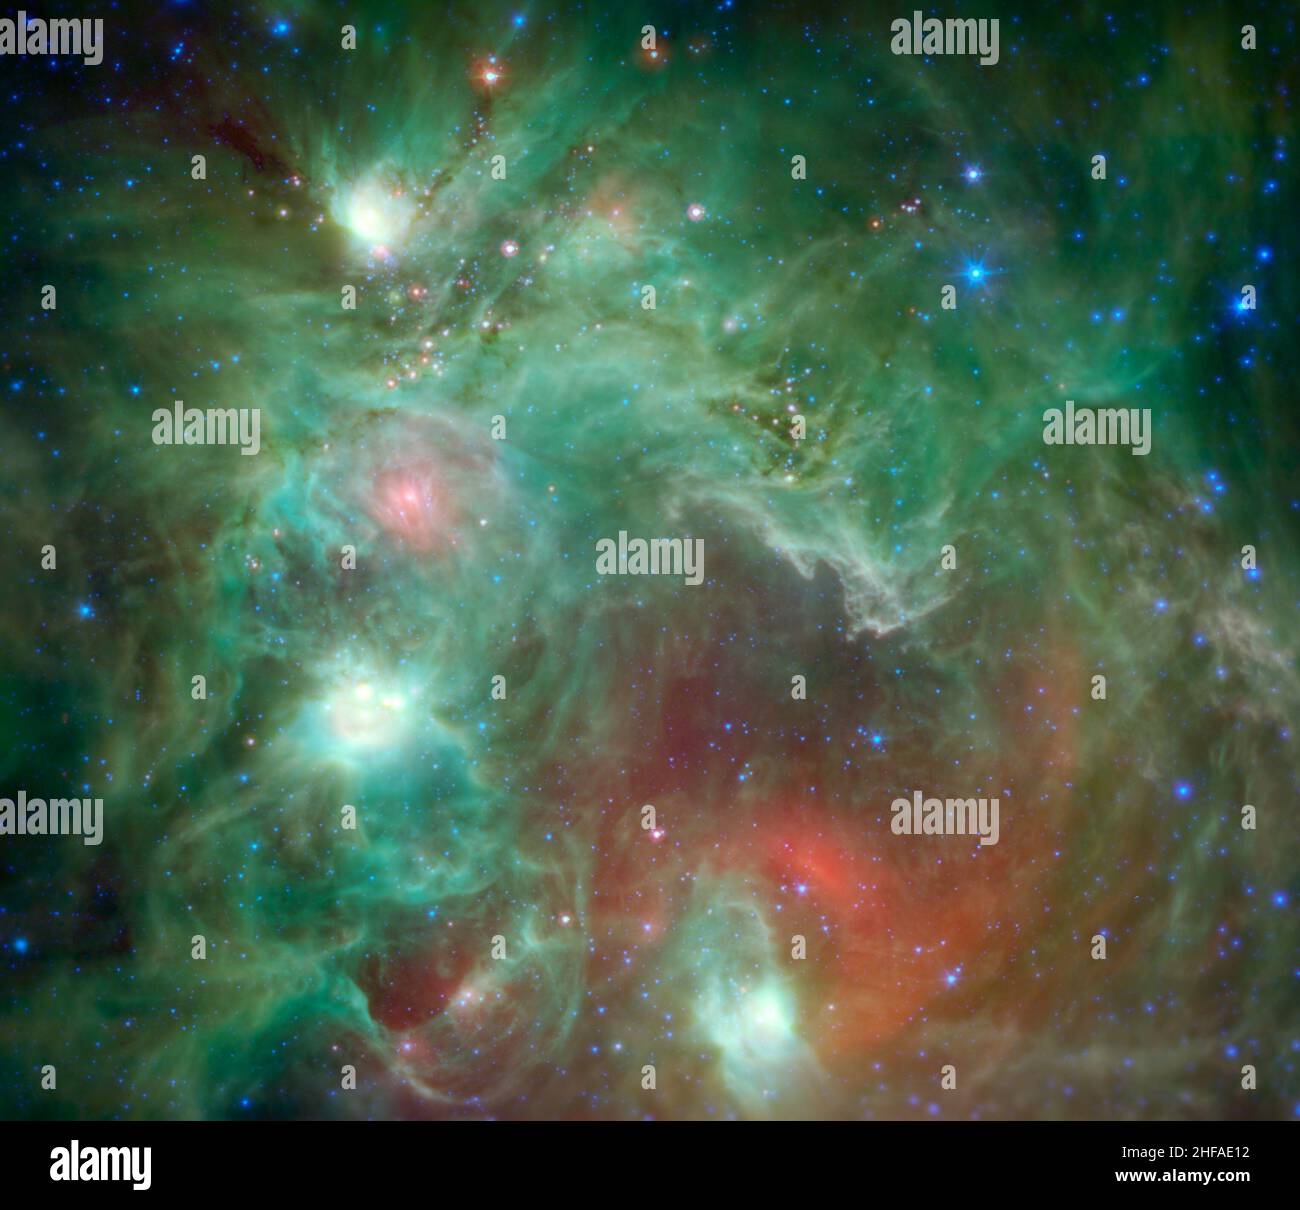 Spazio. 9th Feb 2015. In questa immagine a infrarossi della regione che forma le stelle NGC 2174, come visto dal telescopio spaziale Spitzer della NASA, vengono rivelate decine di stelle del bambino avvolte dalla polvere. In questa immagine pubblicata per la prima volta nel 2015, alle lunghezze d'onda infrarosse sono stati assegnati colori visibili che vediamo con i nostri occhi. La luce con una lunghezza d'onda di 3,5 micron è indicata in blu, 8,0 micron è verde e 24 micron in rosso. I verdi mostrano le molecole organiche nelle nuvole di polvere, illuminate da luce di stella. I rossi sono causati dalla radiazione termica emessa dalle aree di polvere più calde. (Credit Image: © NASA/ZUMA Pres Foto Stock